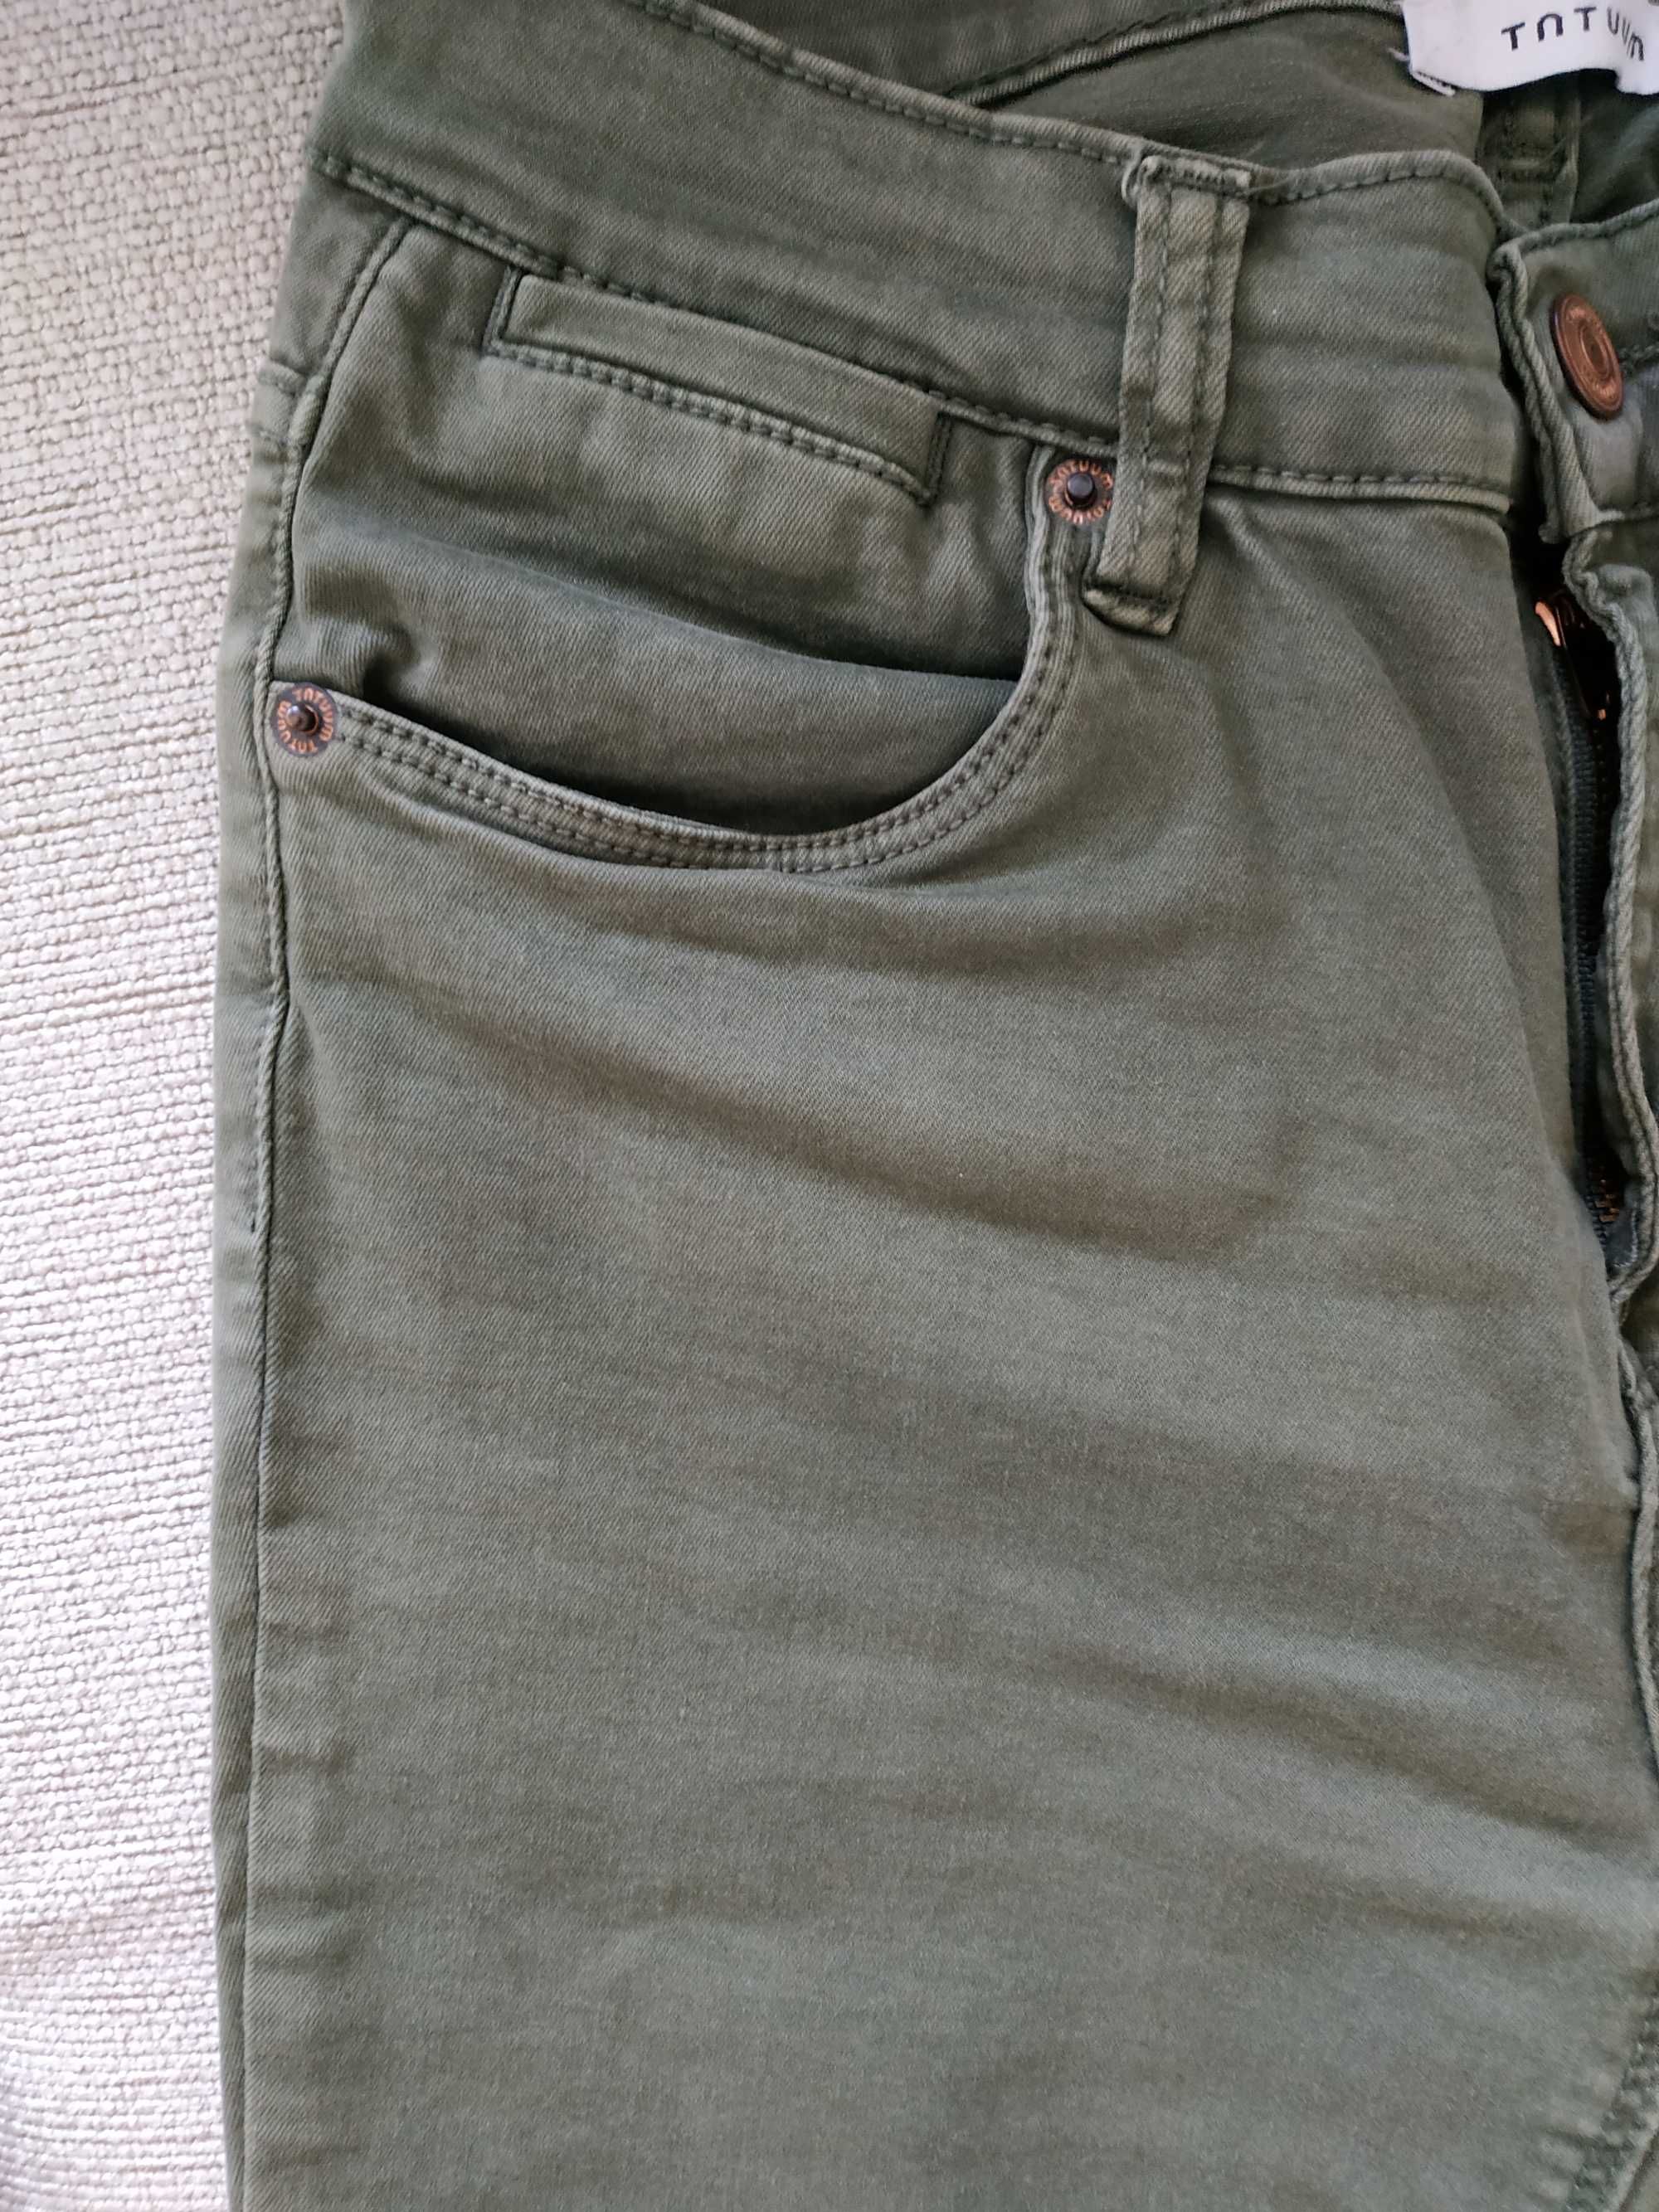 spodnie w kolorze khaki bawełna tauum rozmiar 34